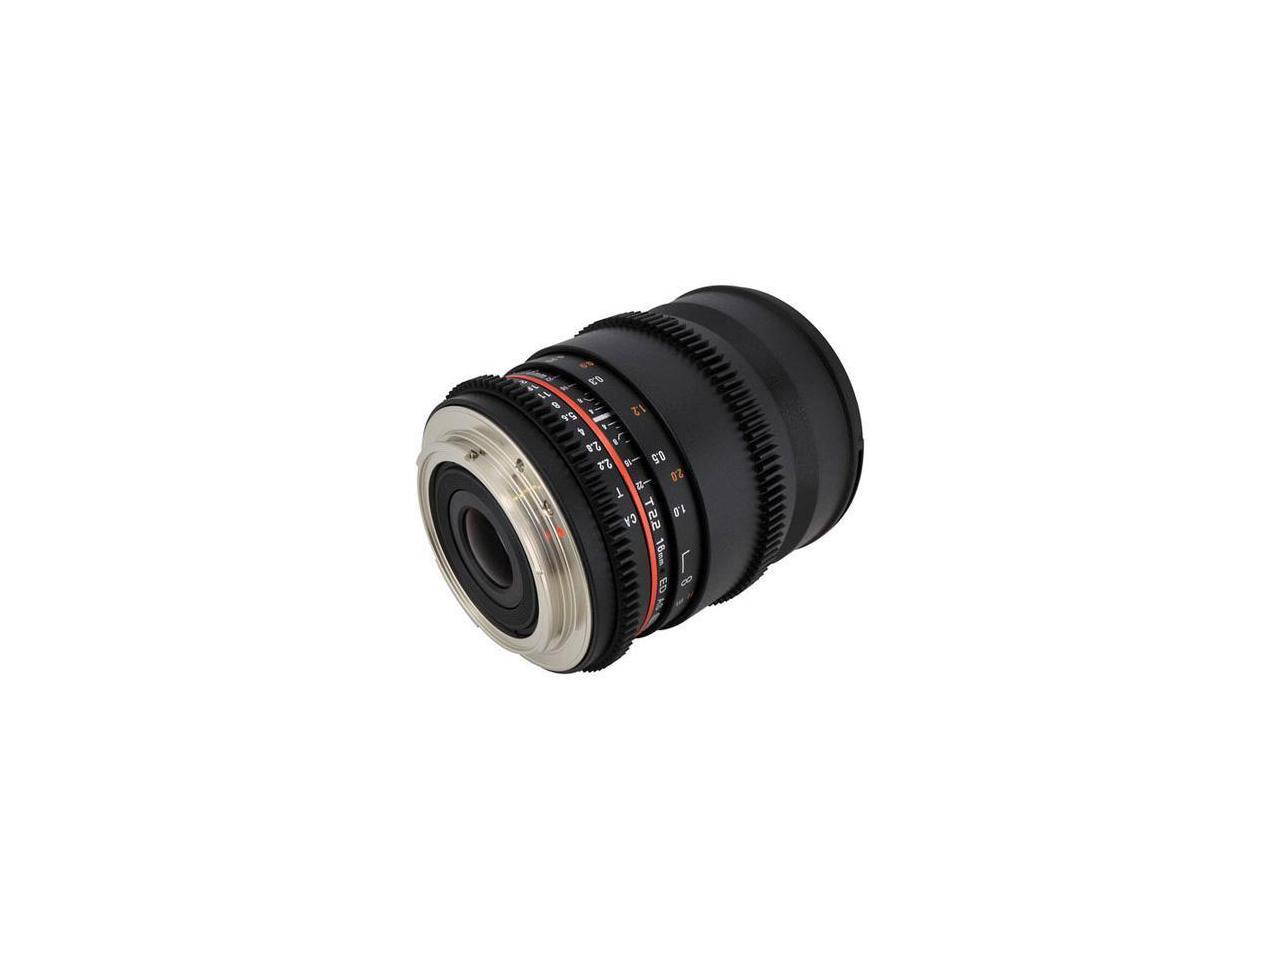 Rokinon CV16M-NEX 16mm T2.2 Cine Wide Angle Lens for Sony E-Mount Cameras